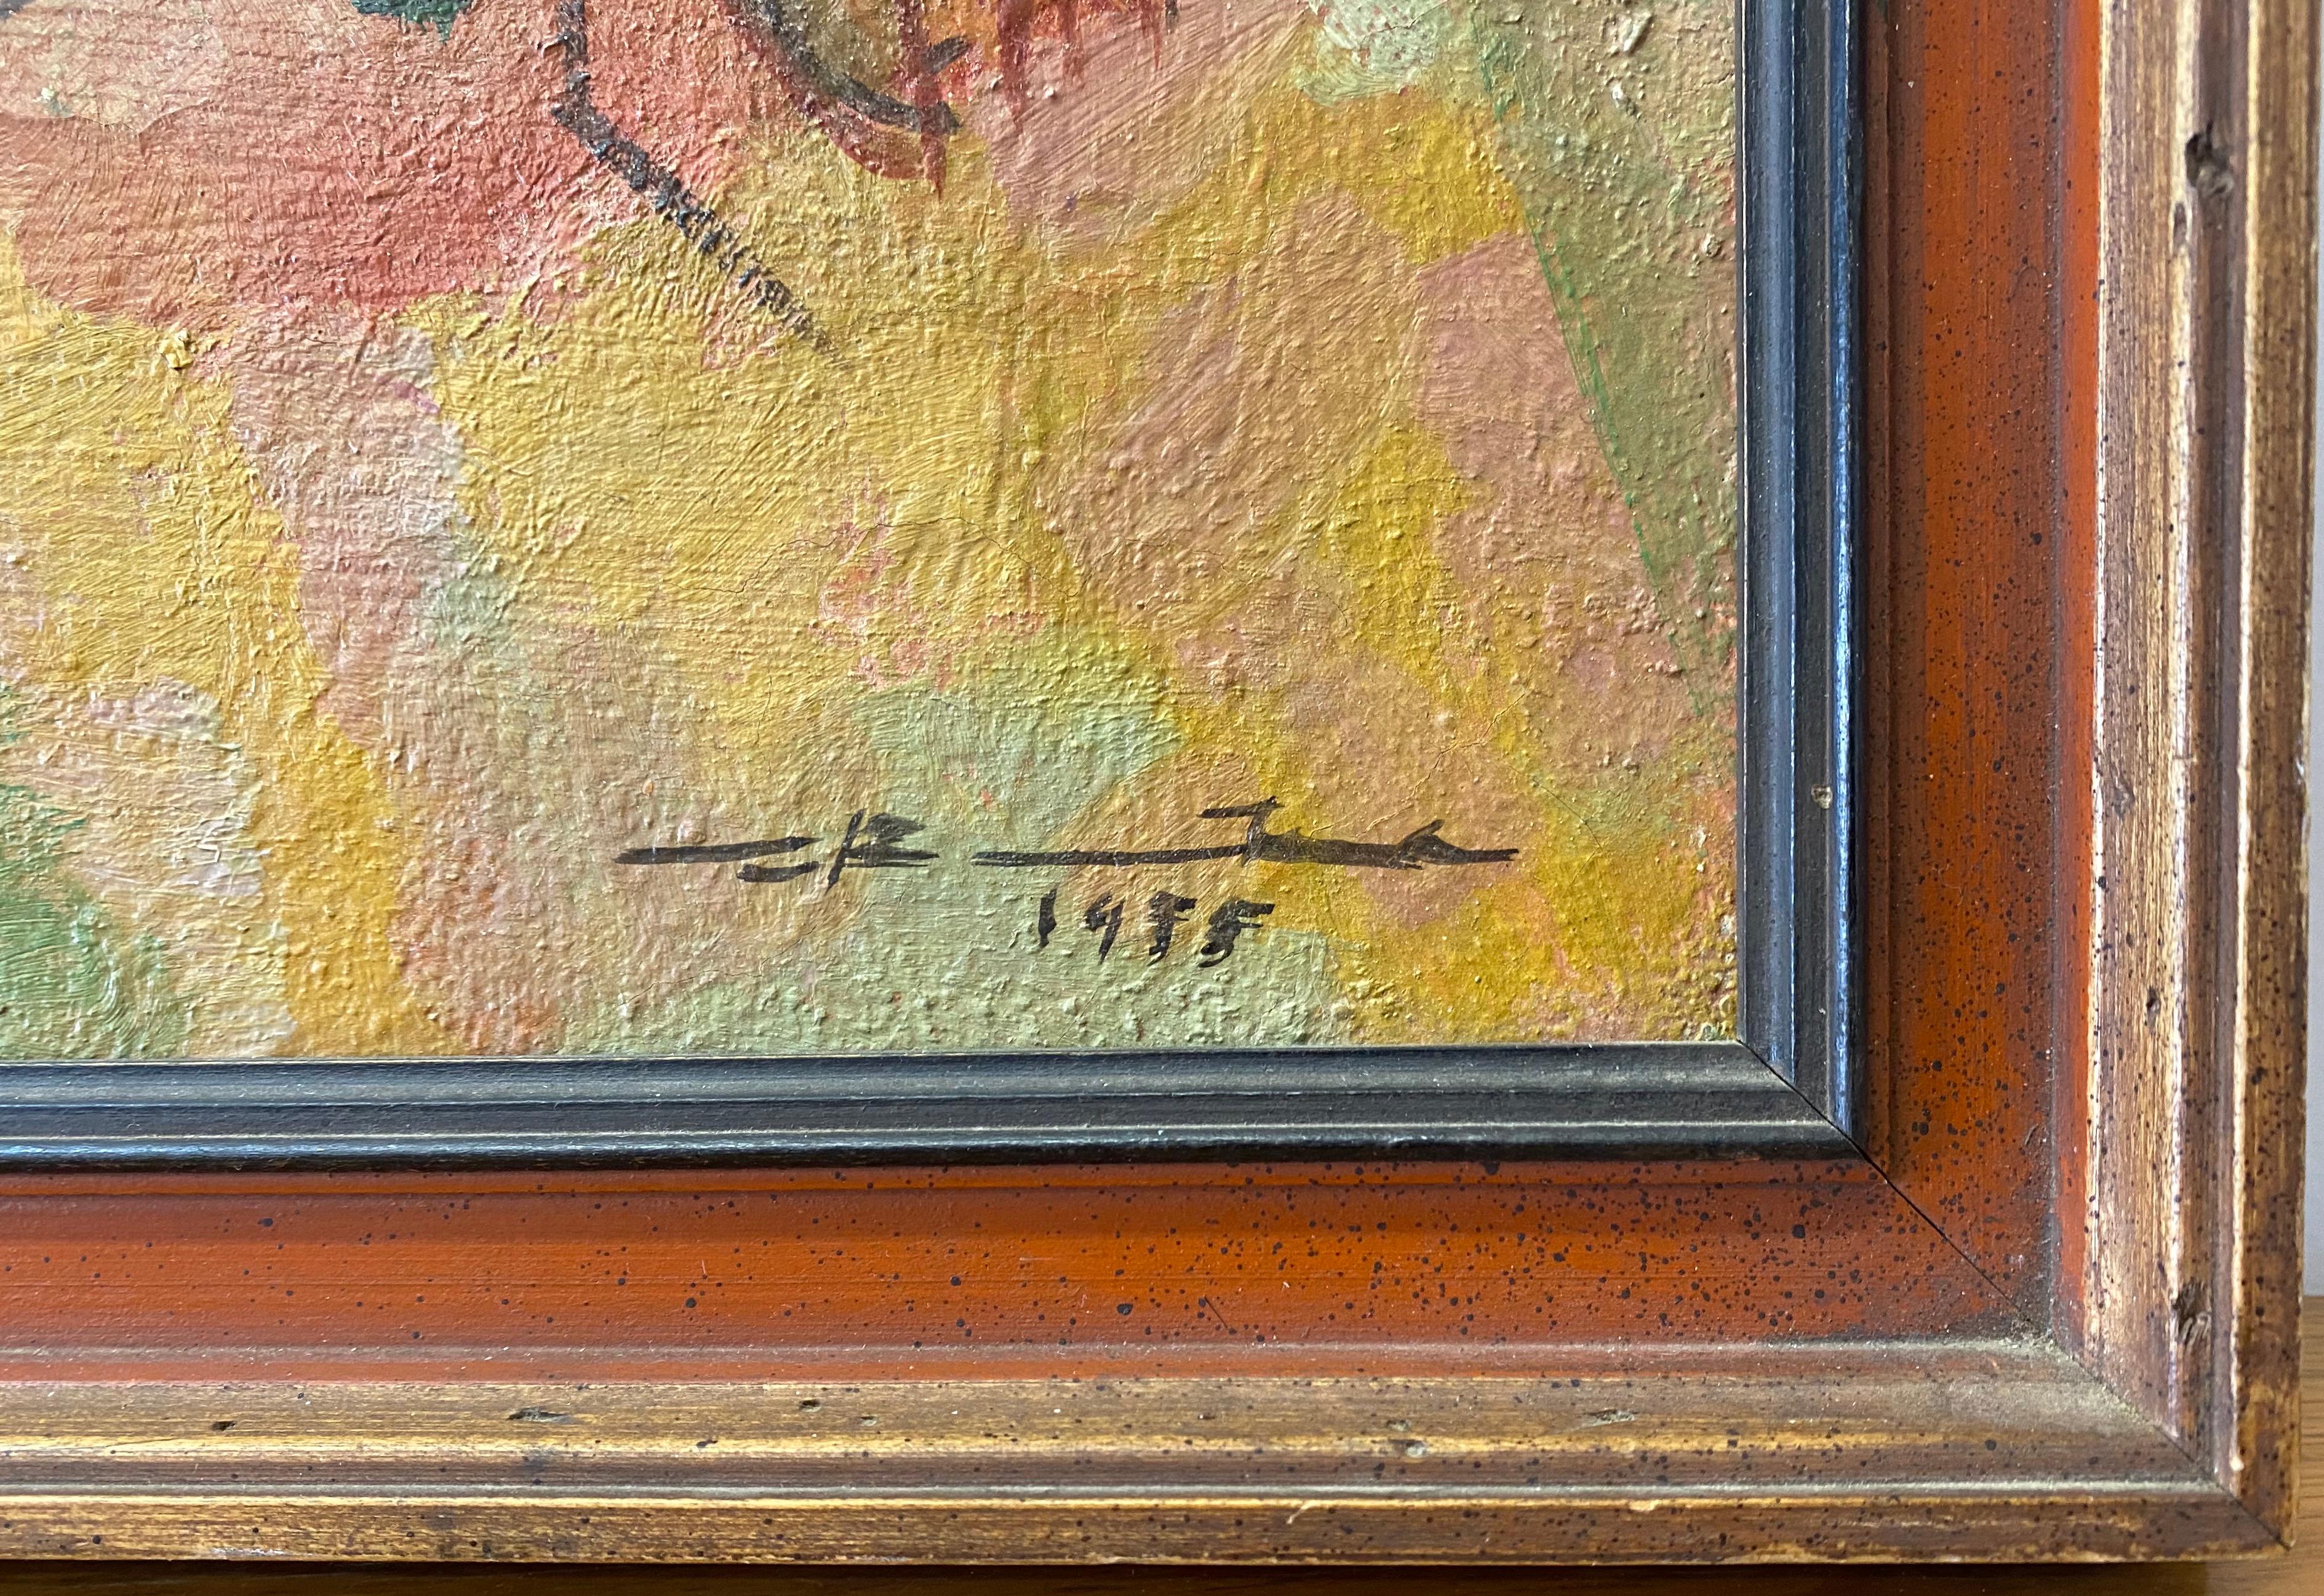 koenig artist signature